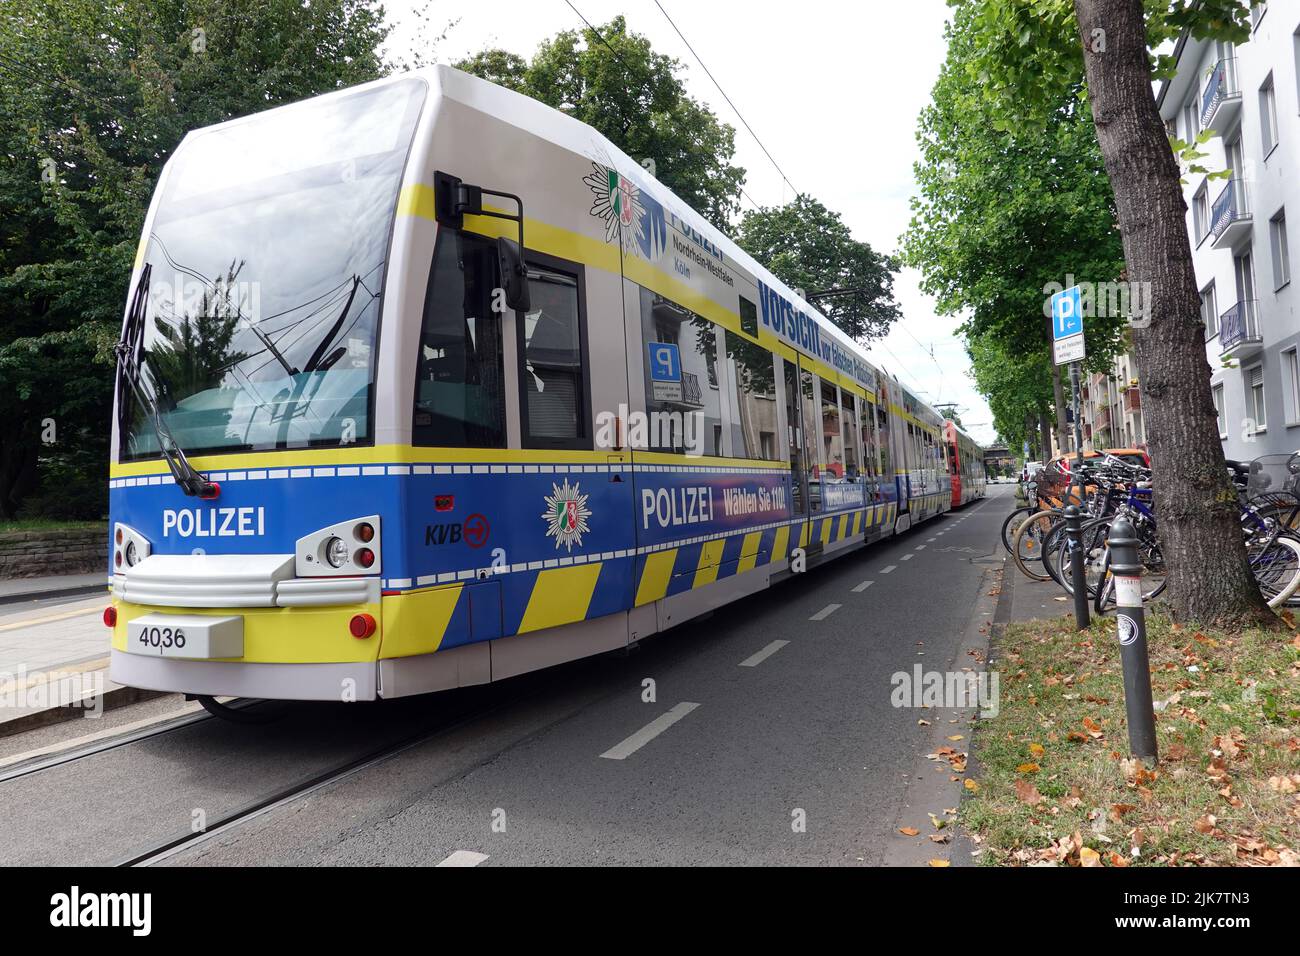 Präventionskampagne der Polizei auf Strassenbahn der Kölner Verkehrsbetriebe gegen falsche Polizisten, Nordrhein-Westfale, Deutschland, Köln Foto Stock